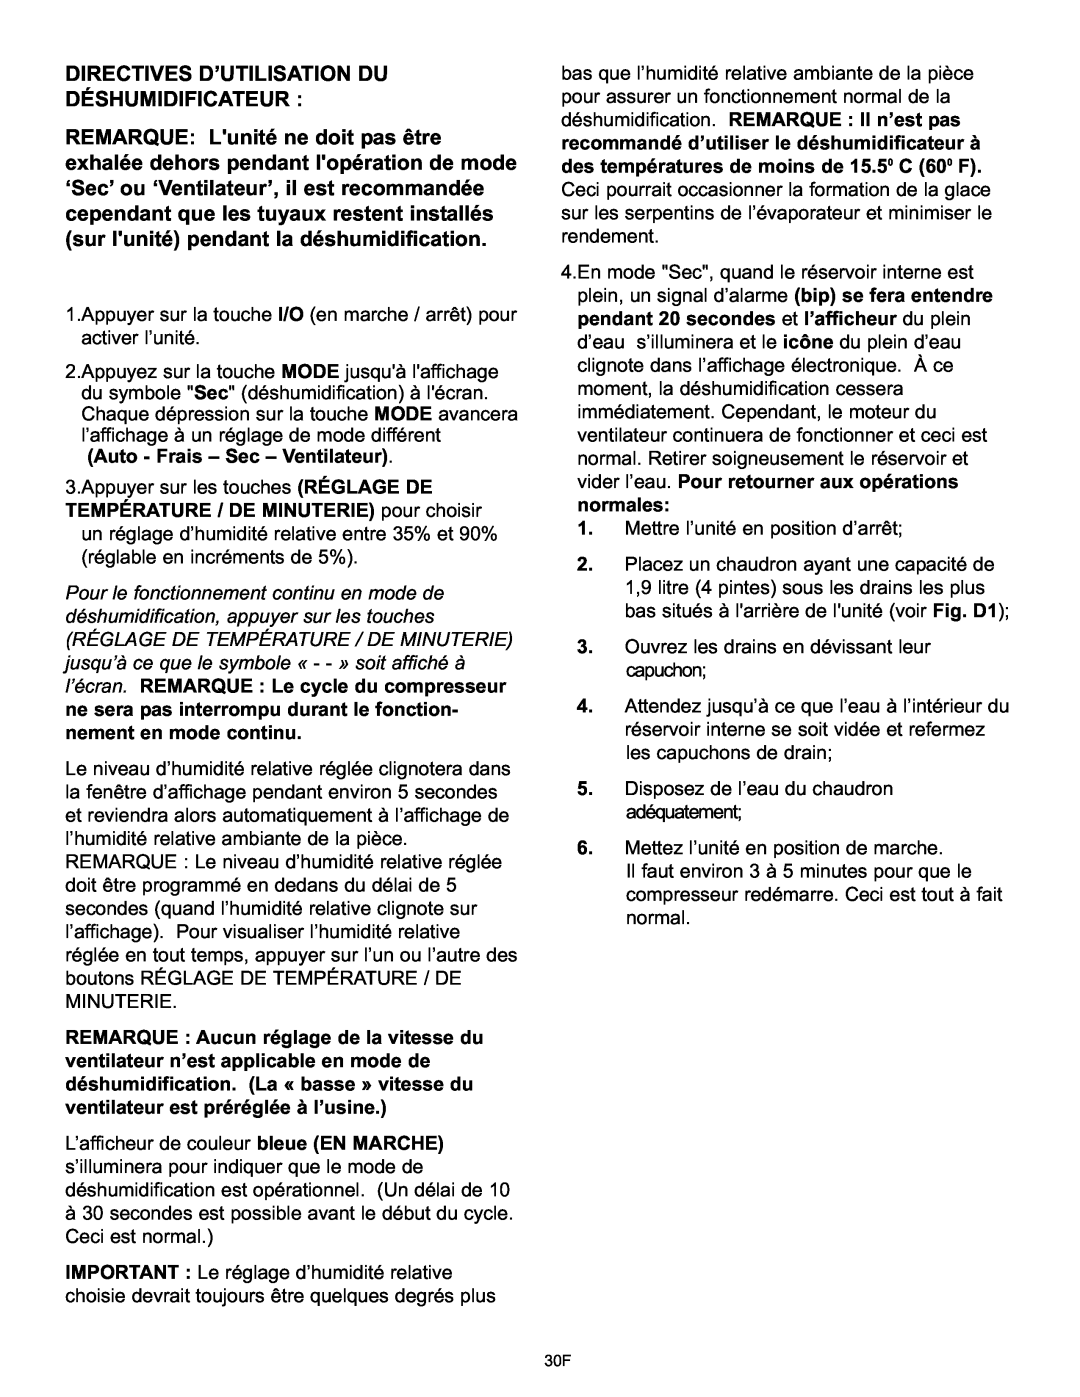 Danby DPAC120061 owner manual Directives D’Utilisation Du Déshumidificateur 